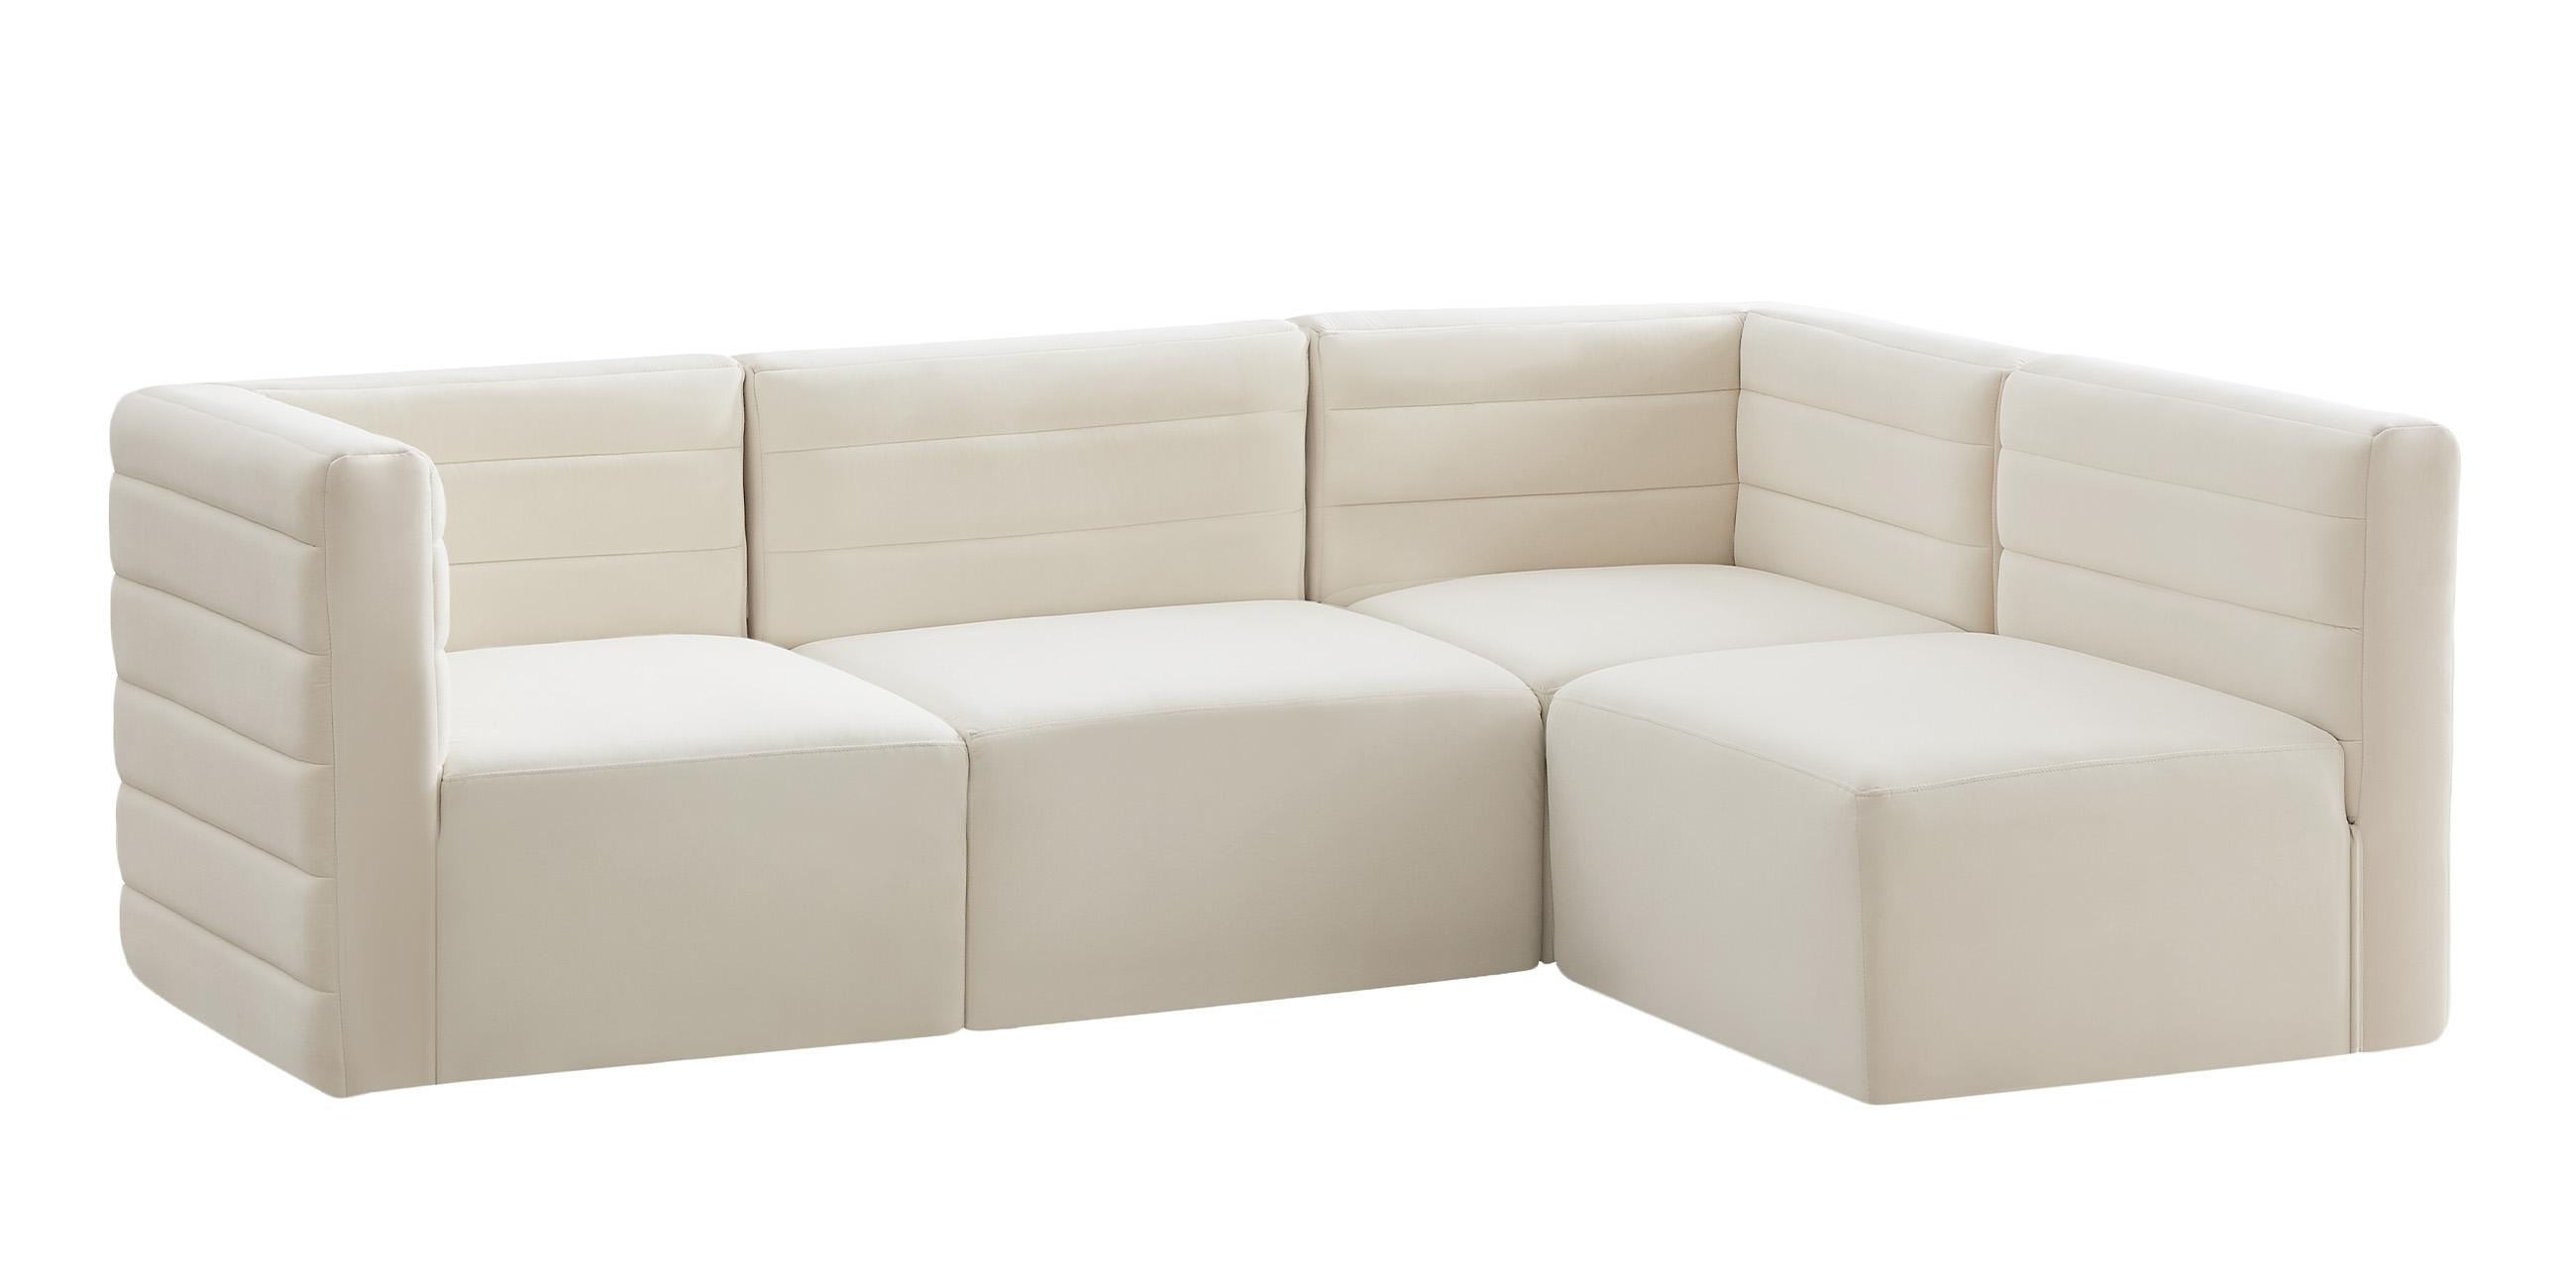 Contemporary, Modern Modular Sectional Sofa Quincy 677Cream-Sec4A 677Cream-Sec4A in Cream Velvet